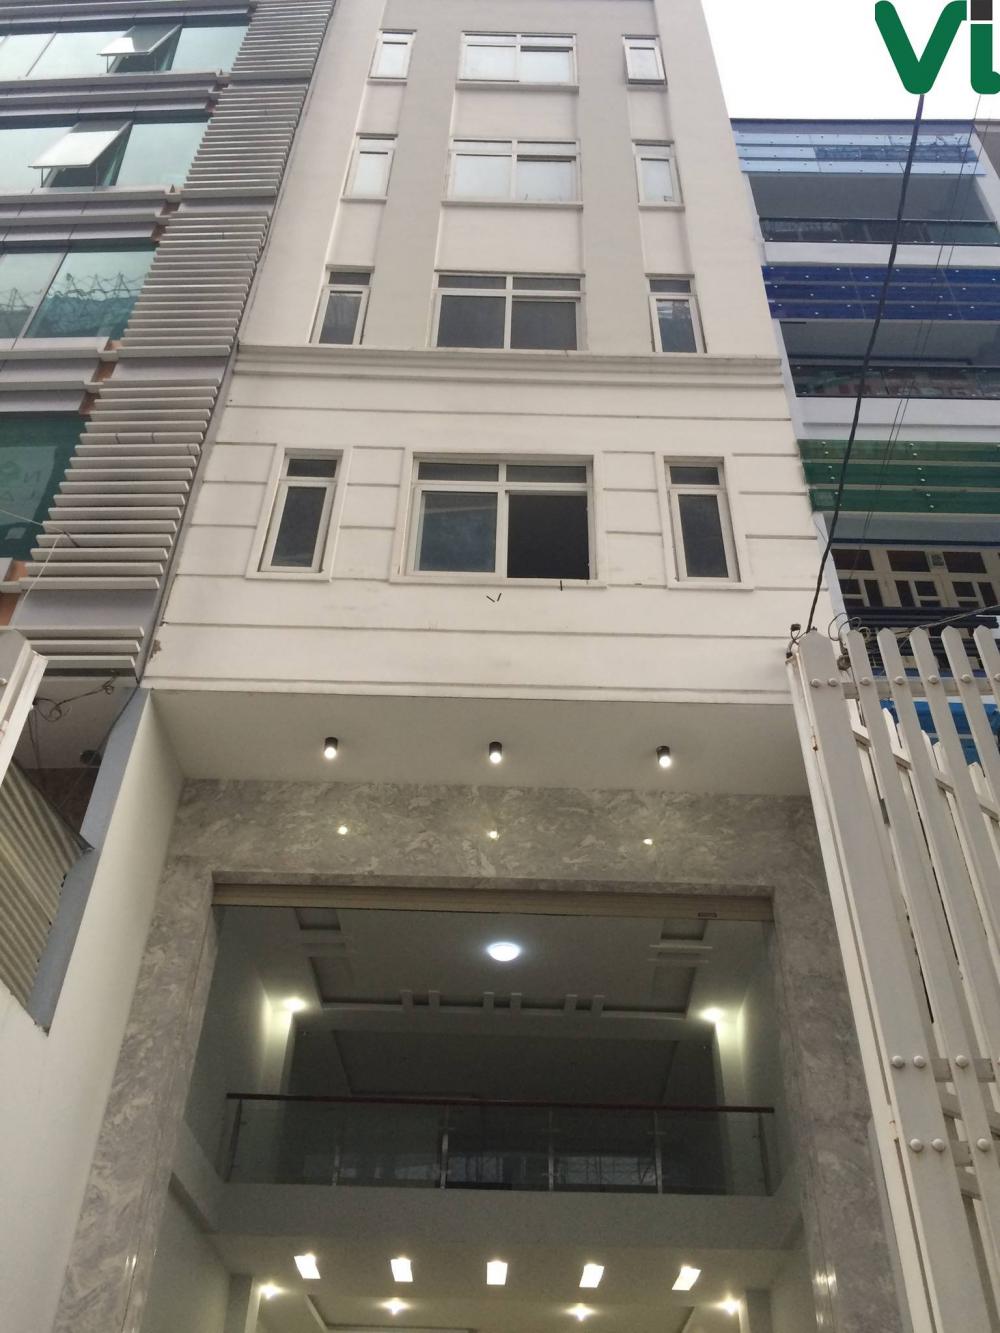 Văn phòng 60m2 chính chủ cho thuê tại quận 4, mặt tiền đường Nguyễn Khoái